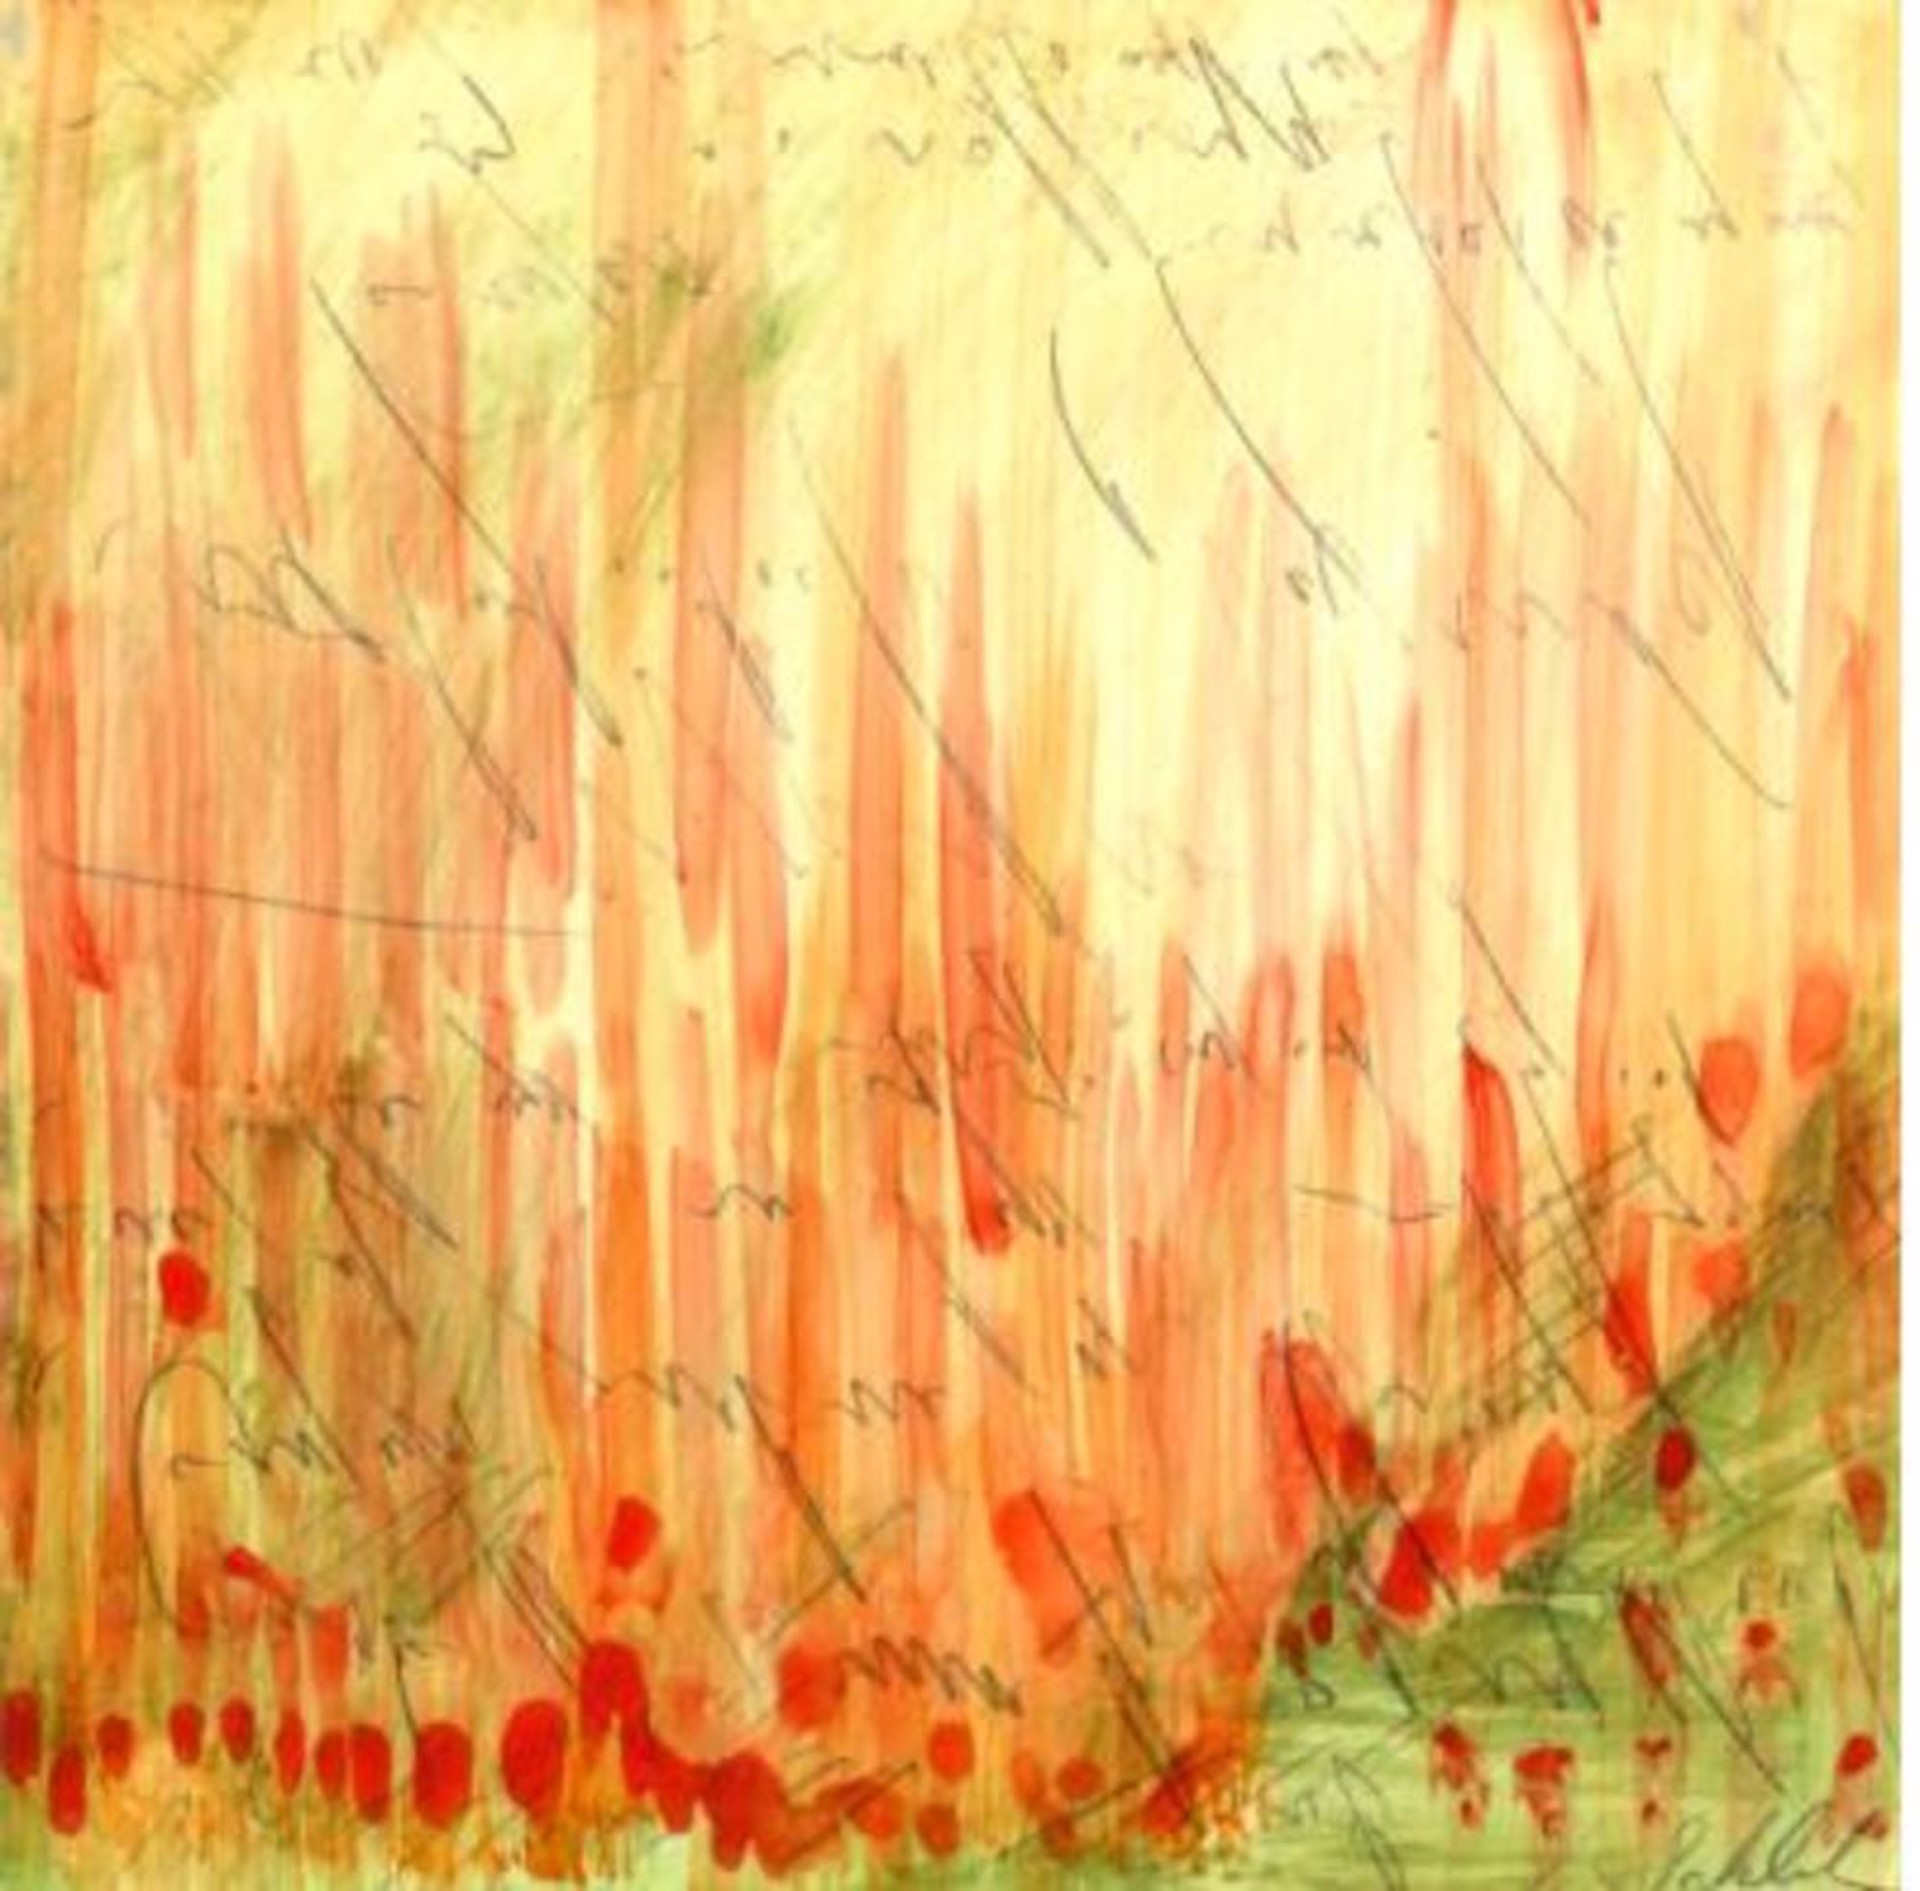 Ideal Landscapes - Orange Brush by Karoline Schleh